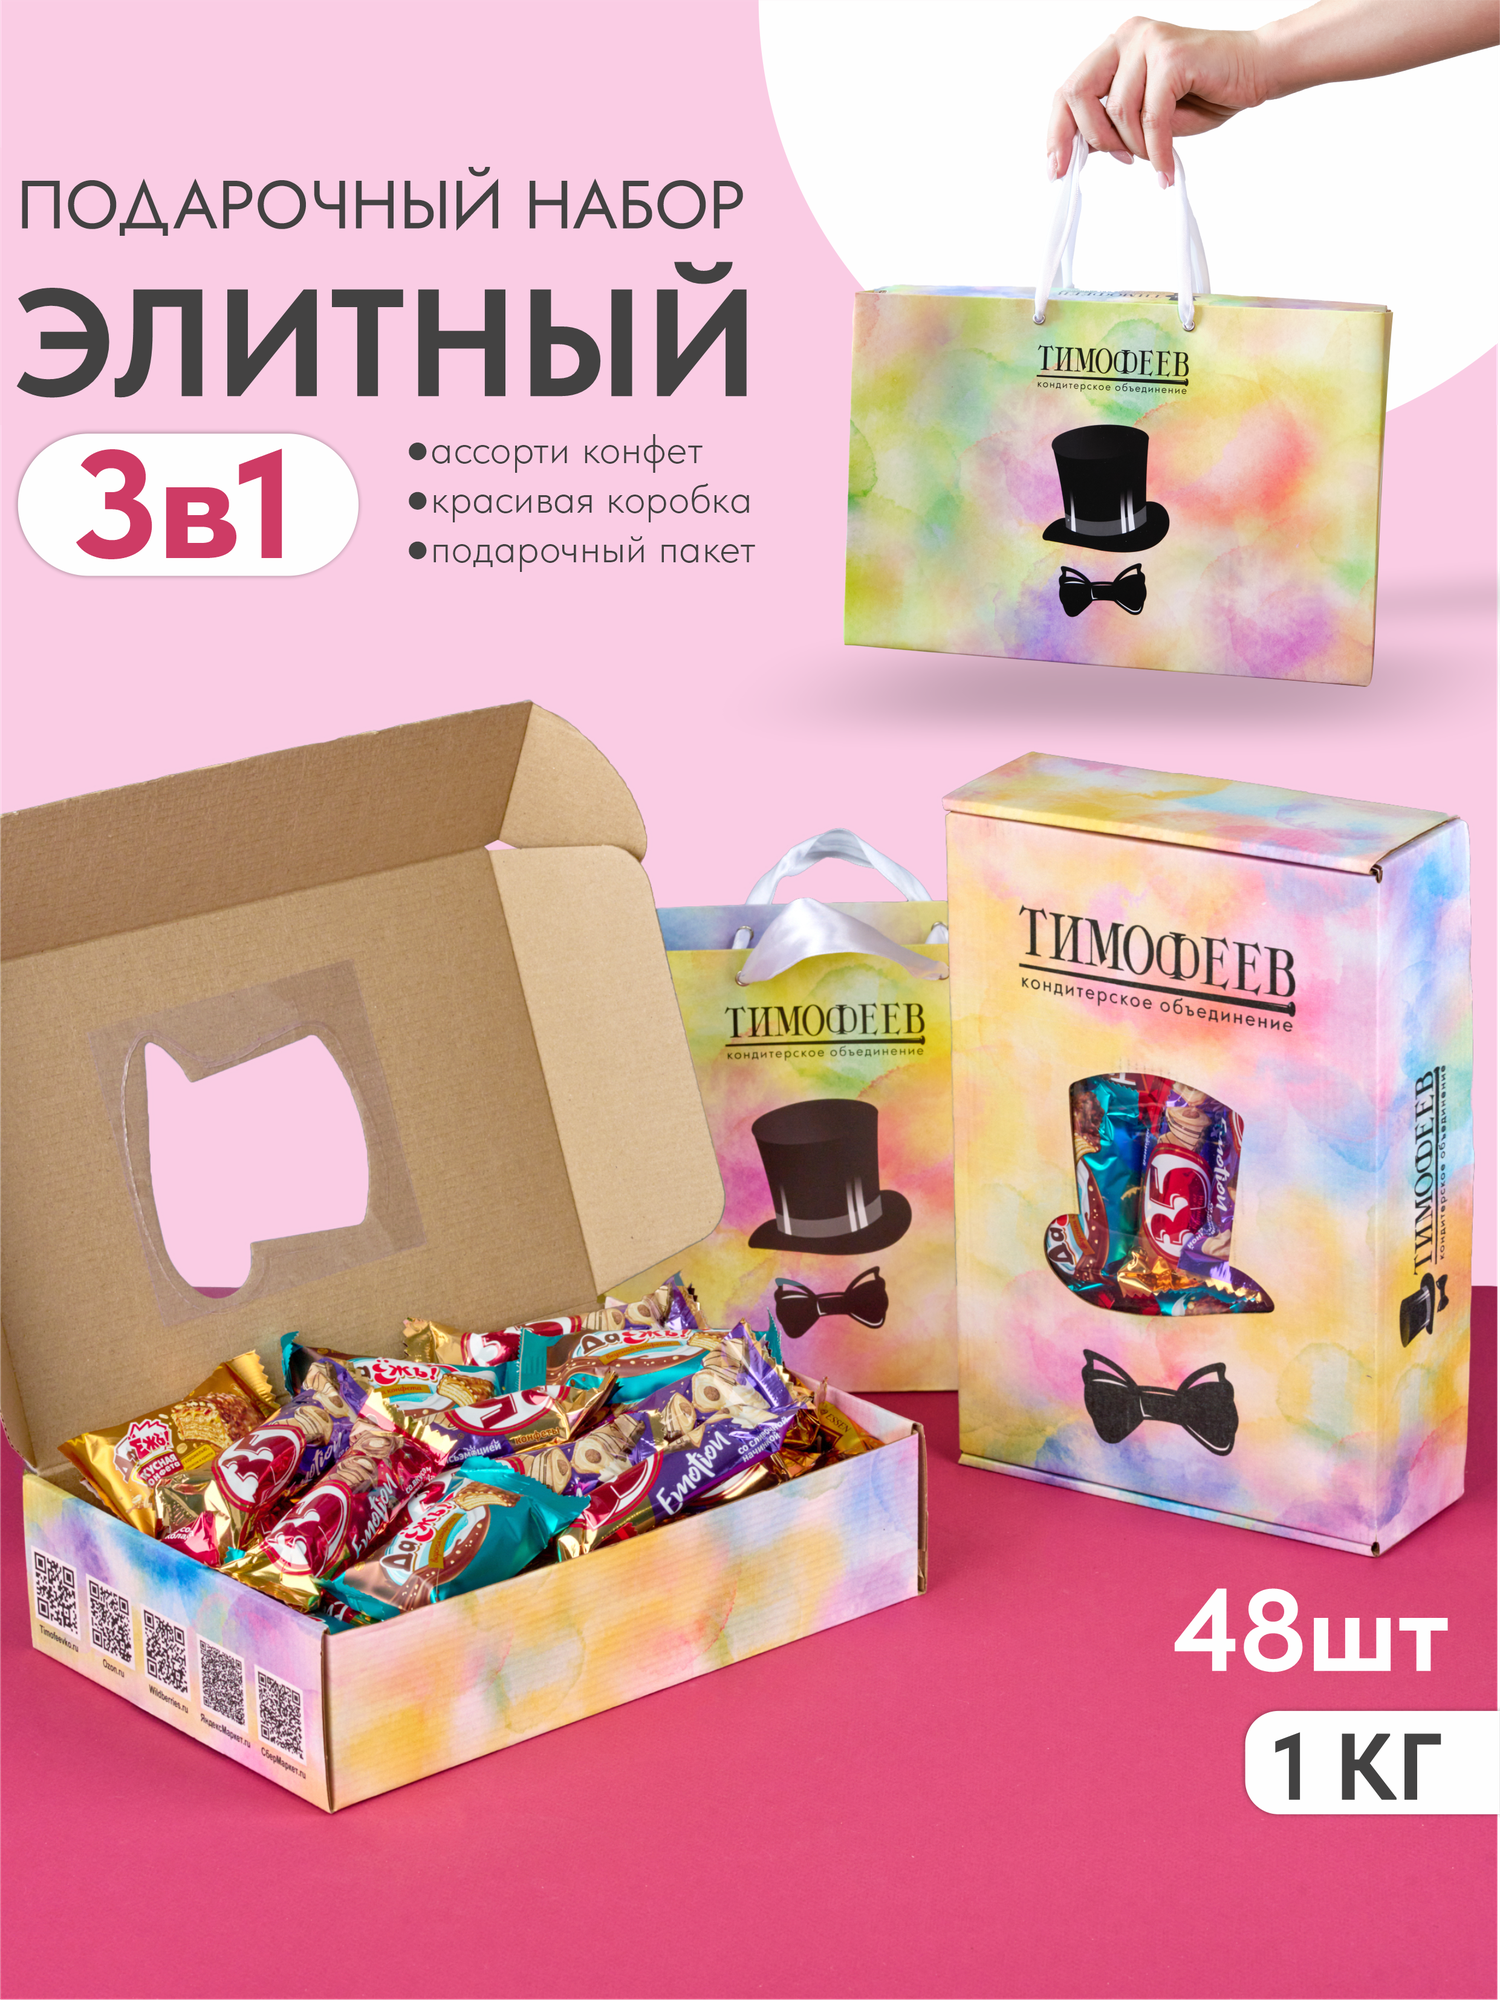 Ассорти шоколадных конфет "Элитный" в подарочном пакете от Тимофеев Ко, 1 кг